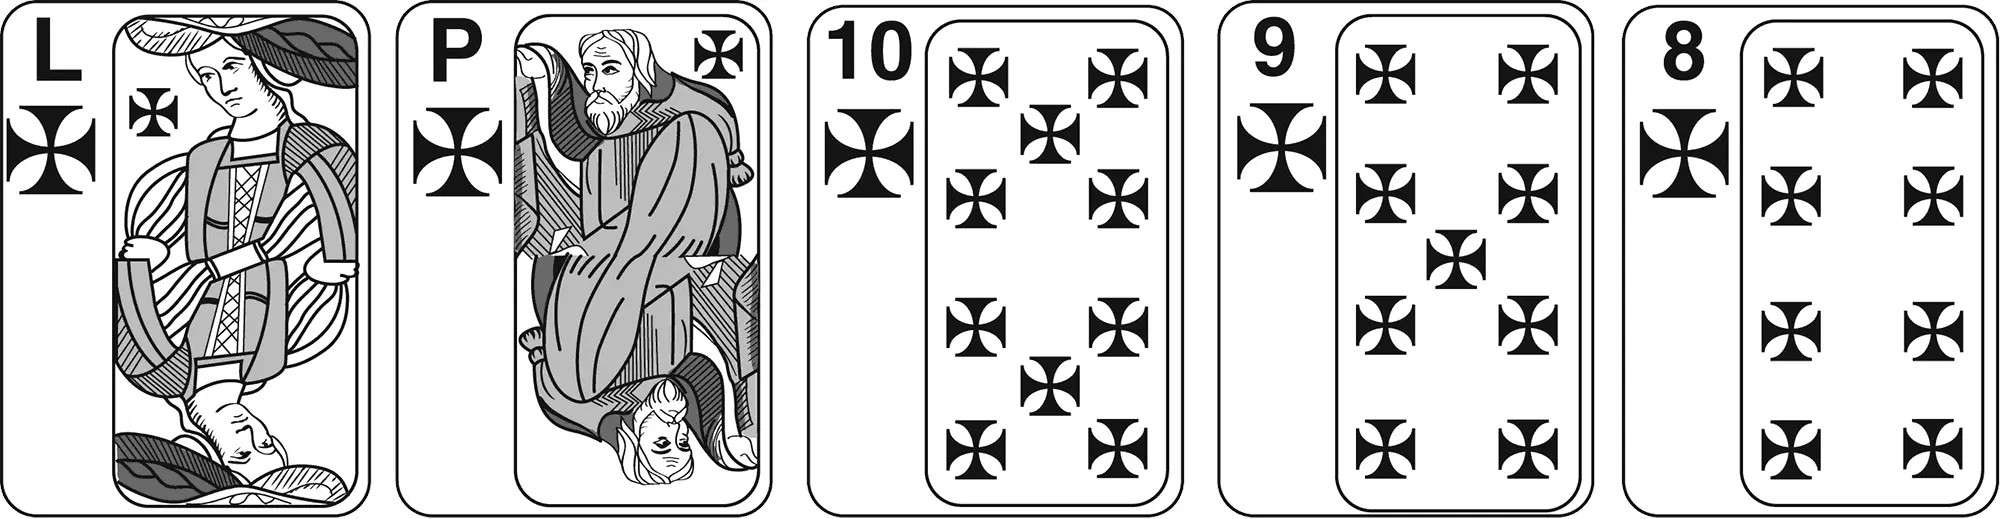 Пять карт одной масти в последовательном порядке Является наивысшей рукой в - фото 9